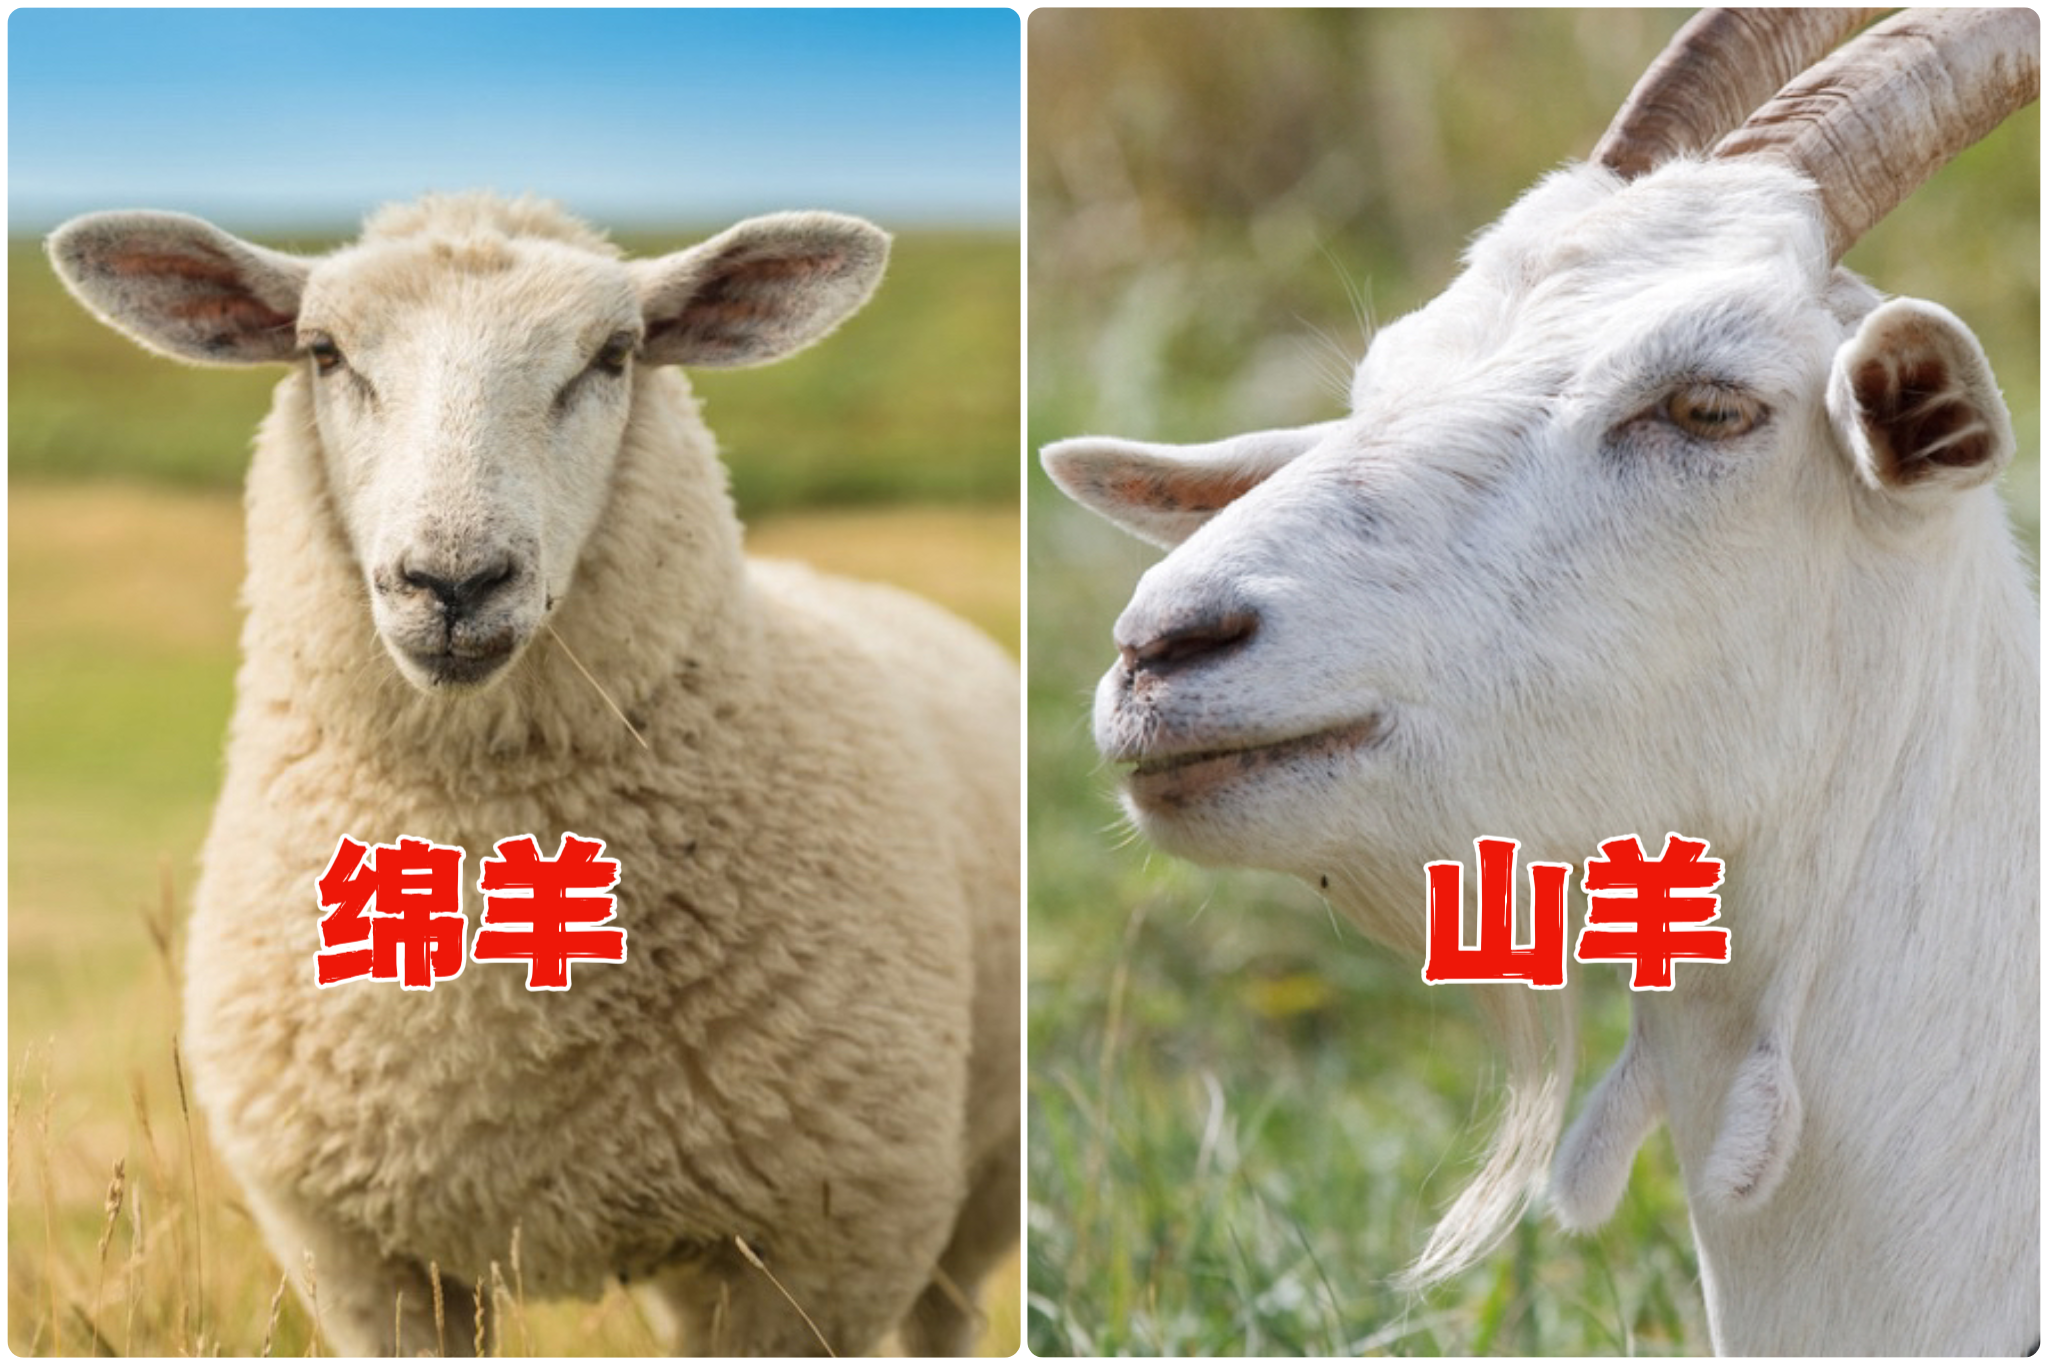 迦南诗歌山羊与绵羊图片